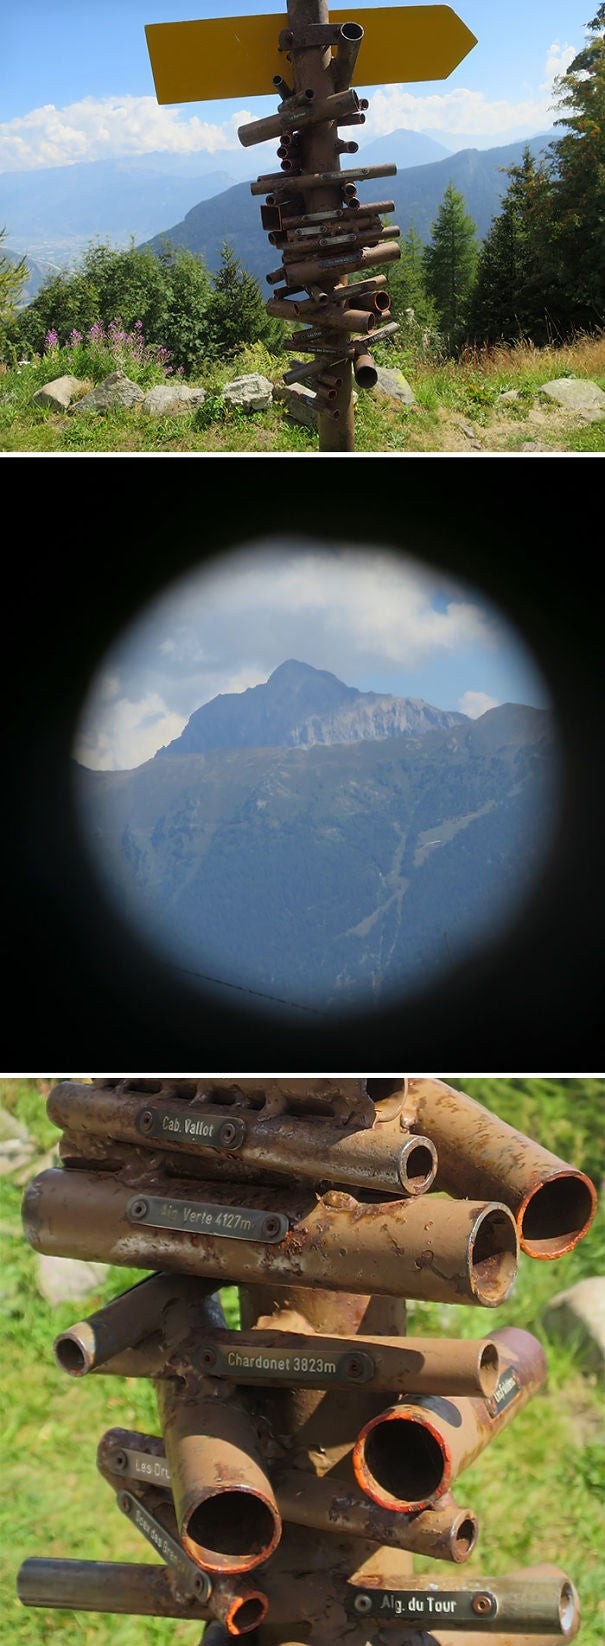 3. In der Schweiz kann man einen anderen Berg aus nächster Nähe sehen wenn man durch eines dieser Rohre blickt!